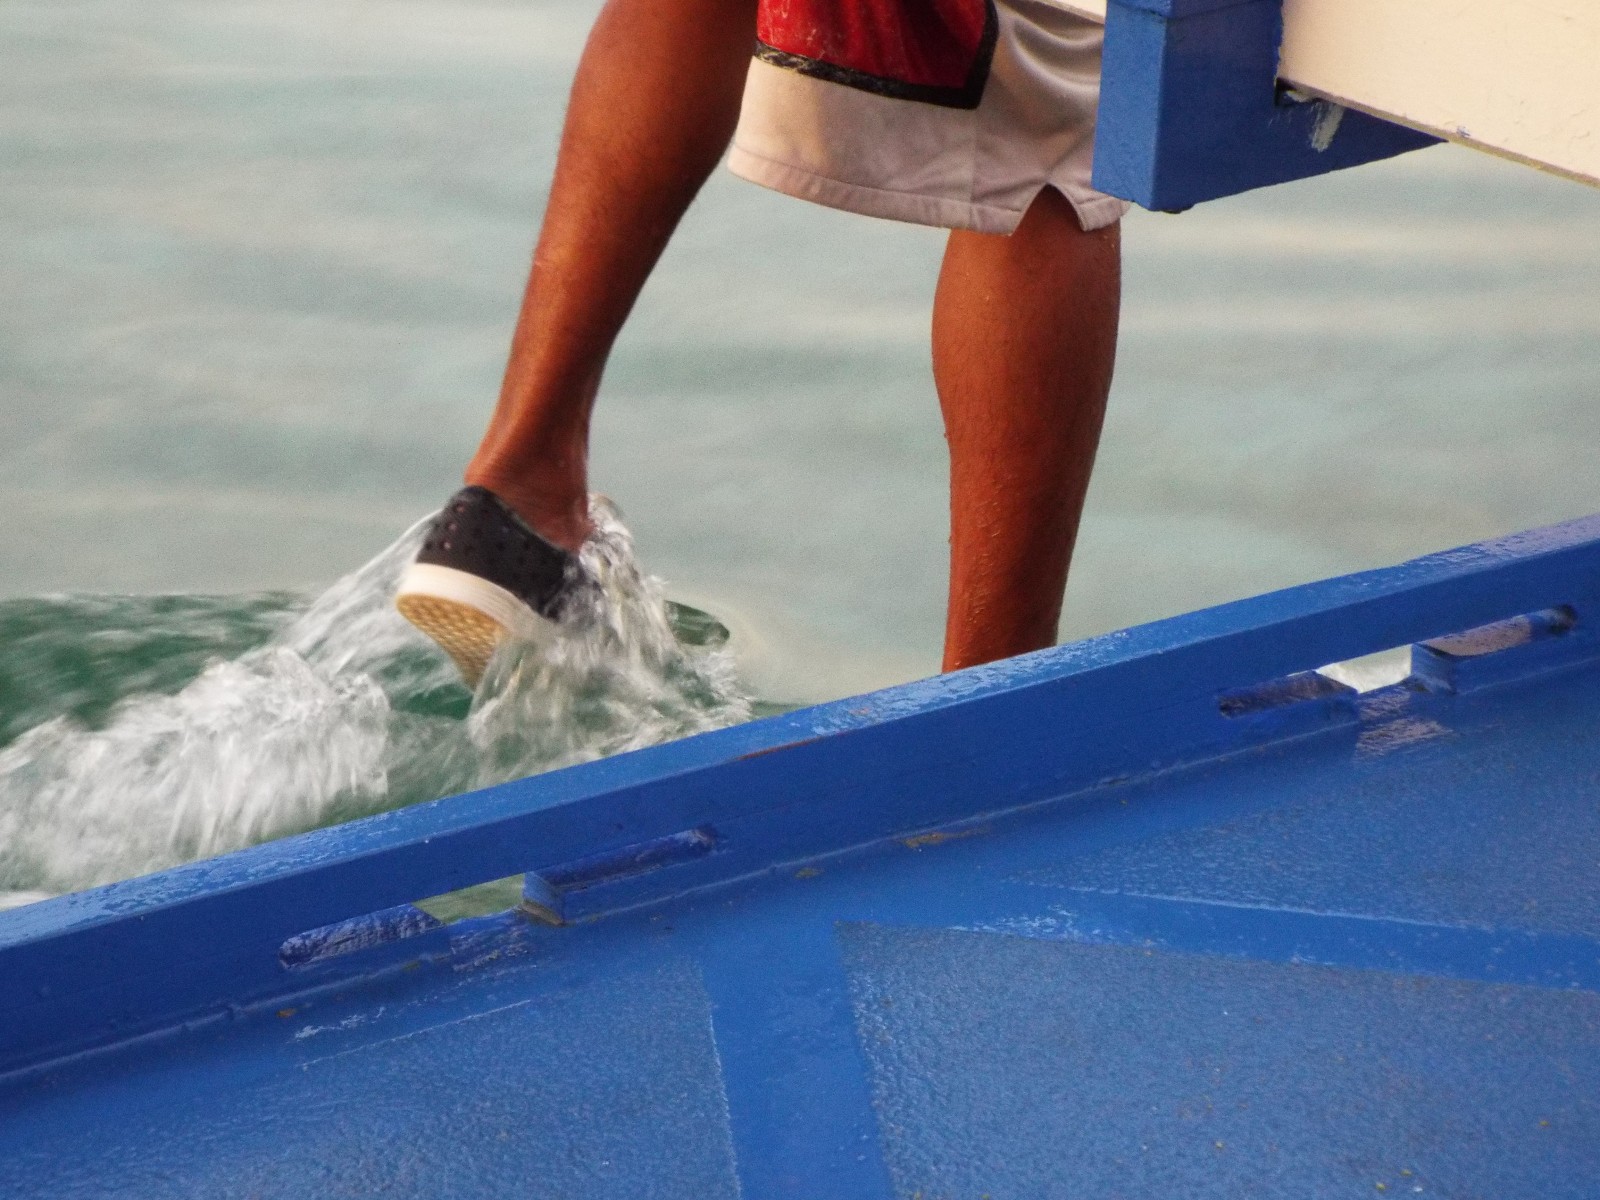 Splashing in the surf, Feet | Shoe | Sea | Water | Ocean | Wave | Waves | Surf | Blue | Man | Boat | Boats